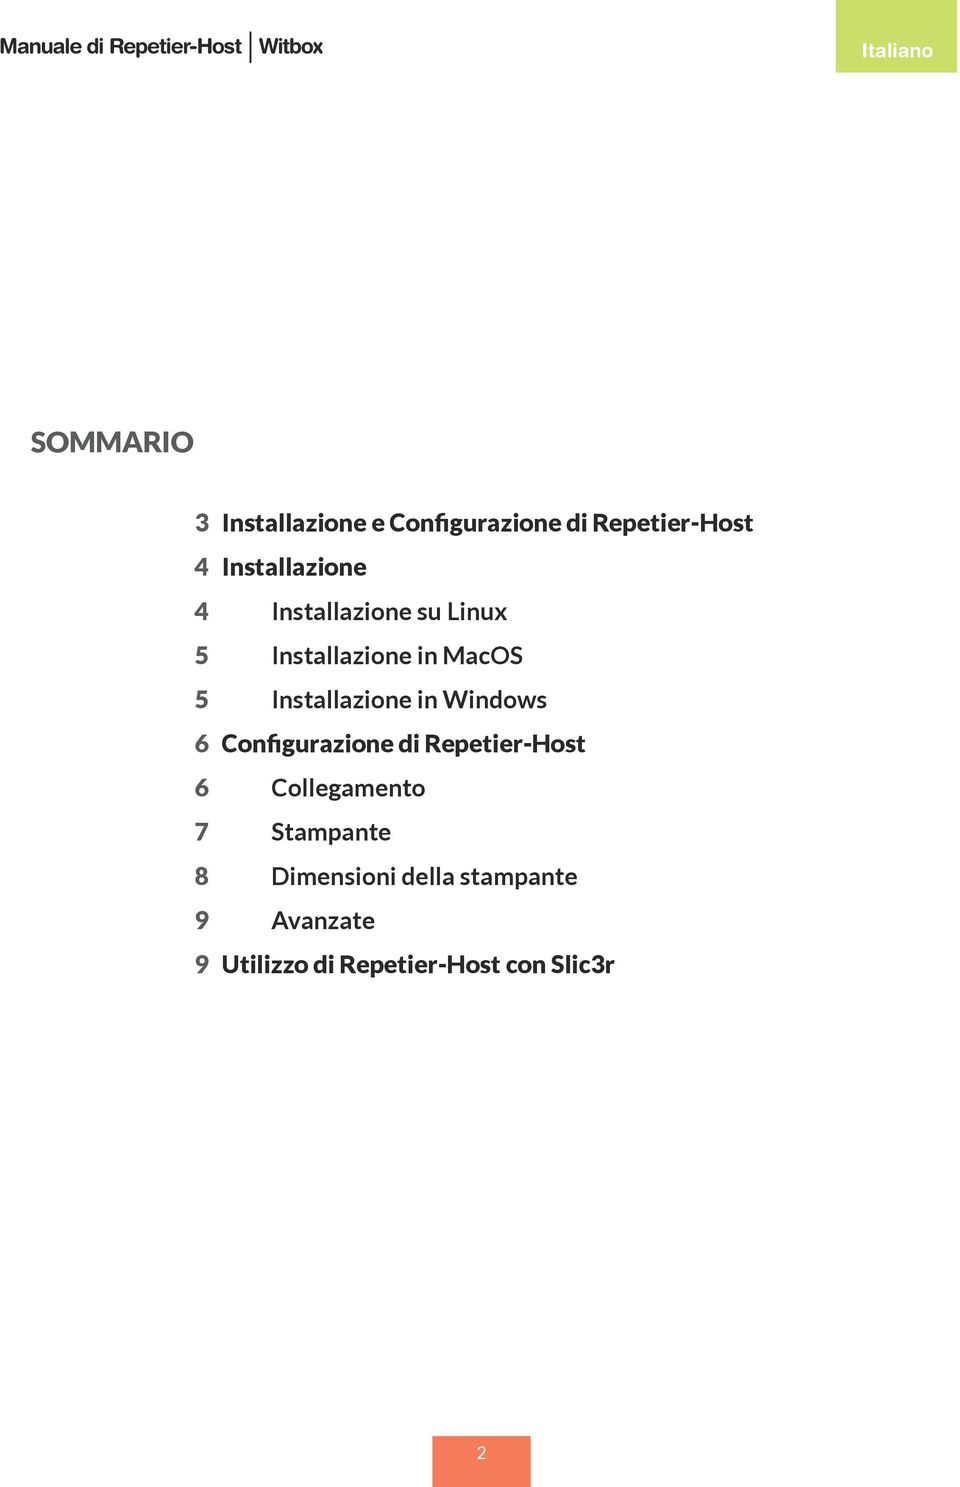 Installazione in Windows 6 Configurazione di Repetier-Host 6 Collegamento 7